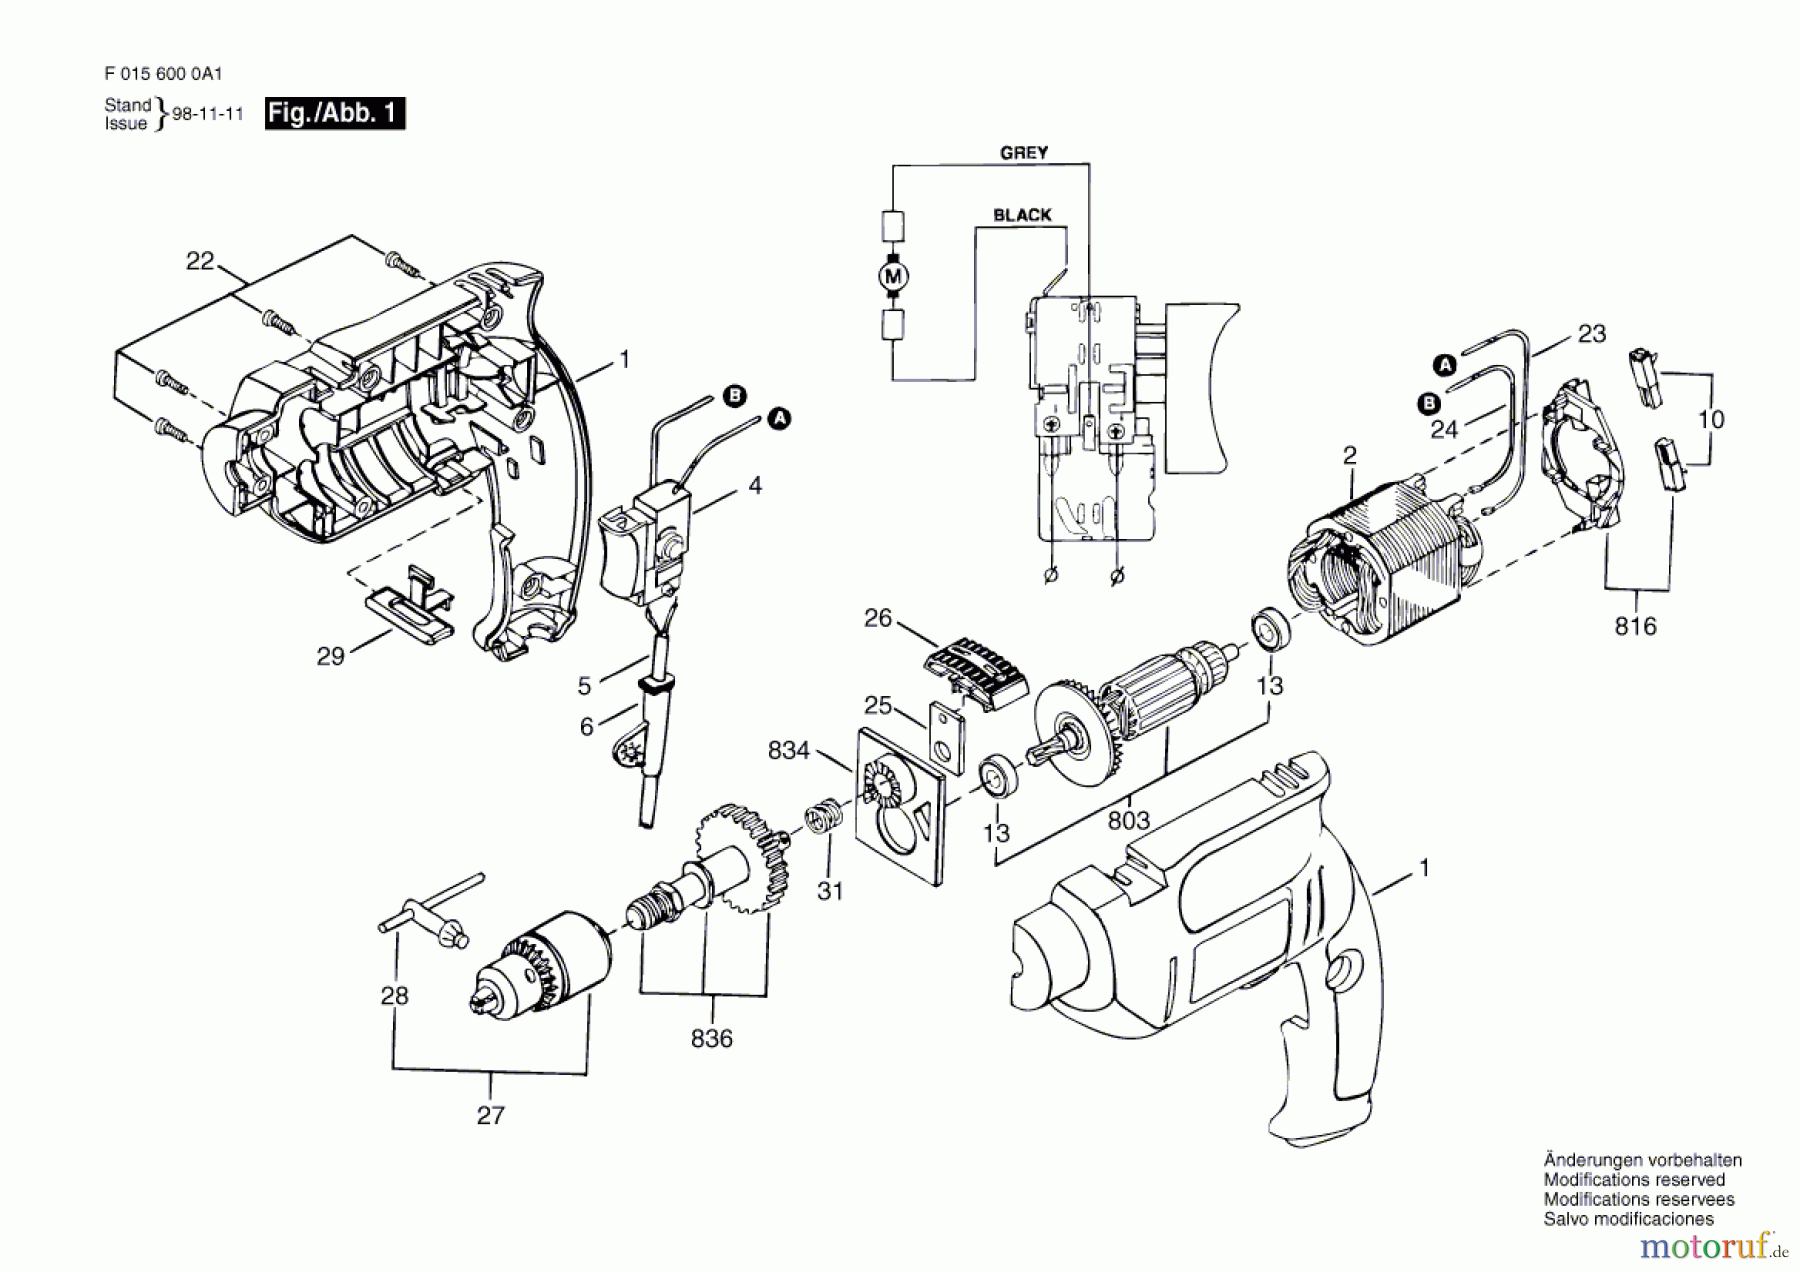  Bosch Werkzeug Ratsche 6000 Seite 1